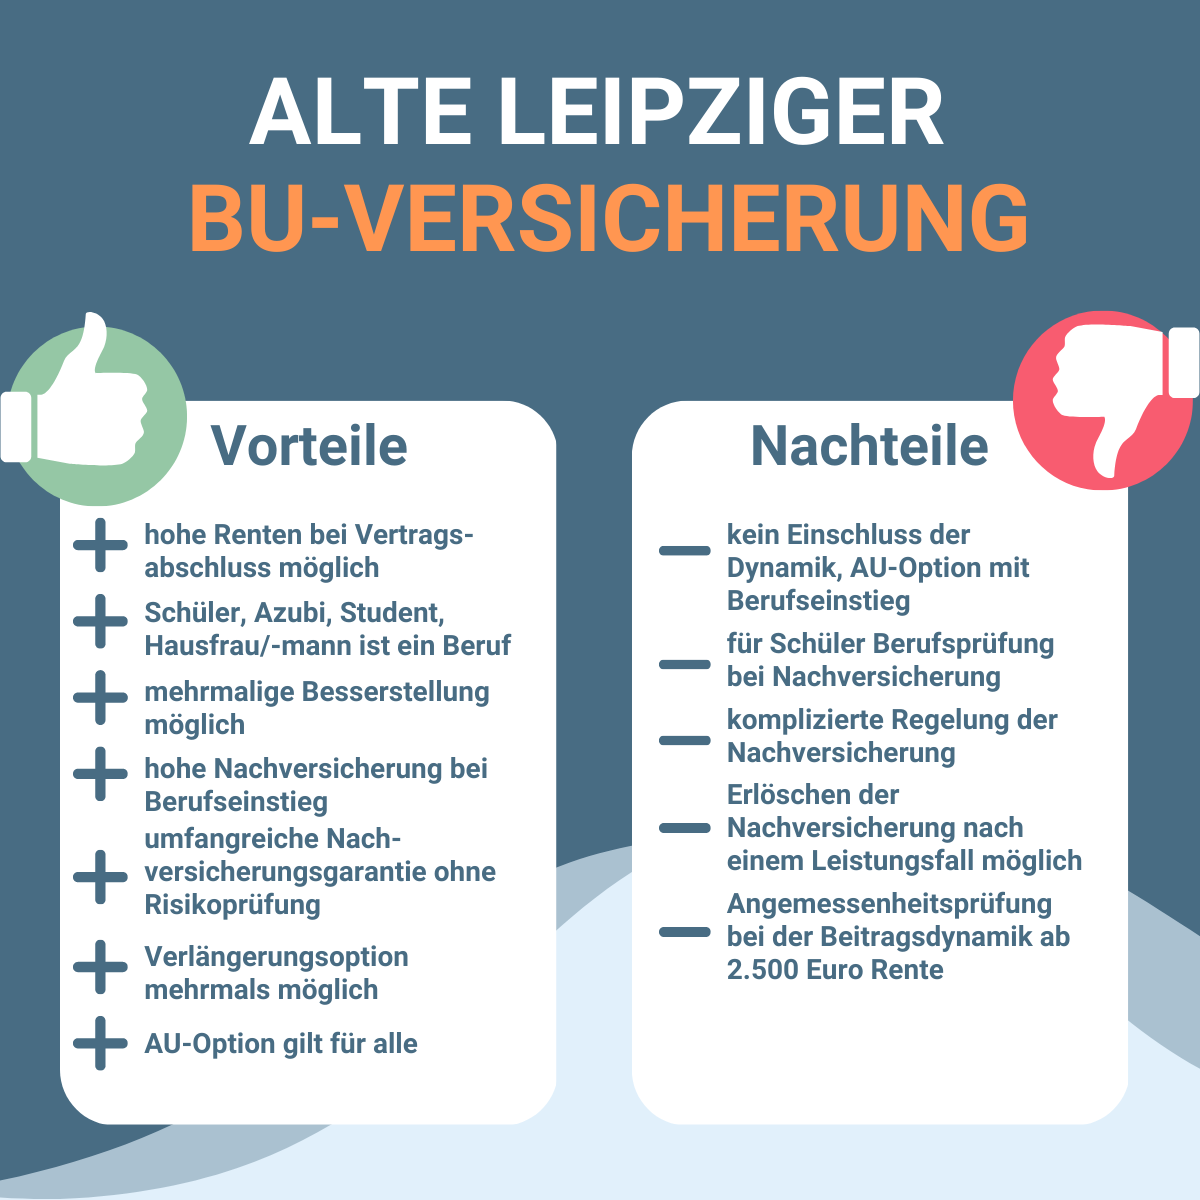 Infografik zu Vorteilen und Nachteilen einer Berufsunfähigkeitsversicherung bei der Alte Leipziger.